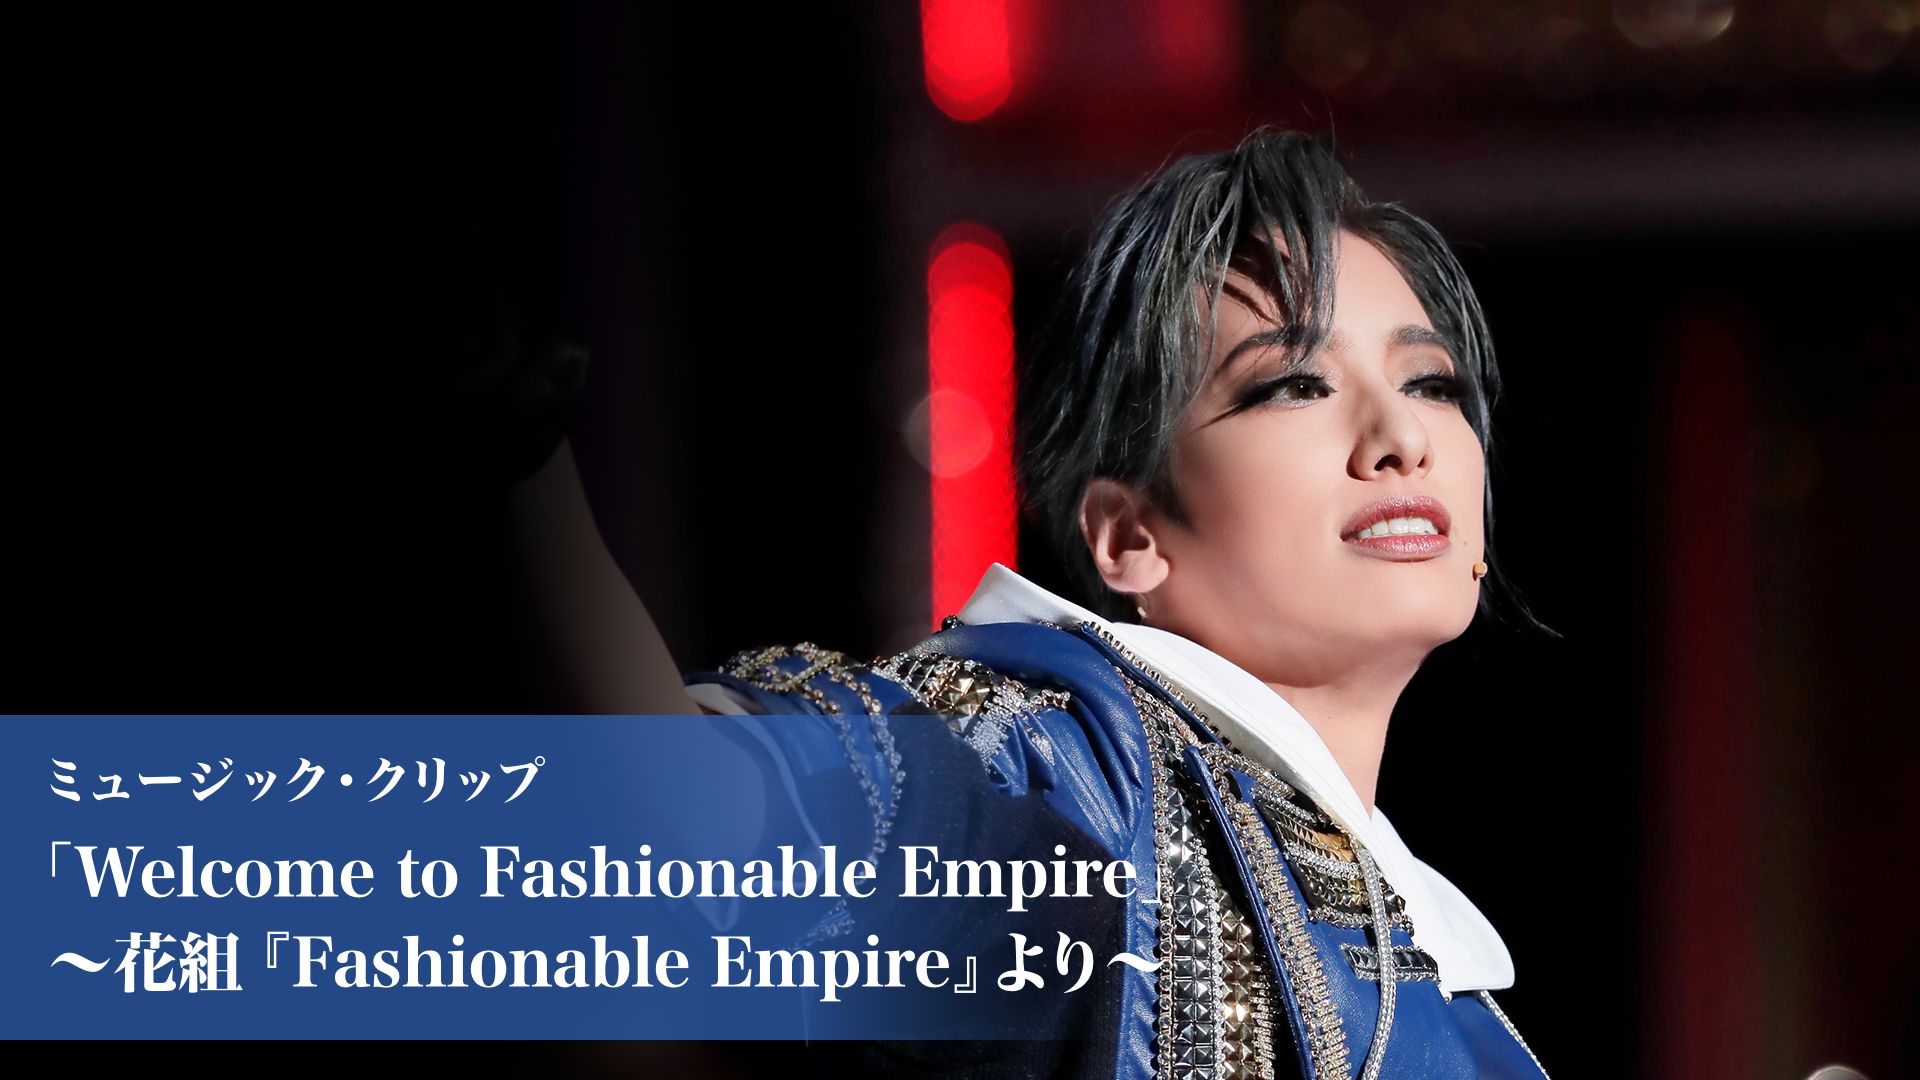 ミュージック・クリップ「Welcome to Fashionable Empire」〜花組『Fashionable Empire』より〜